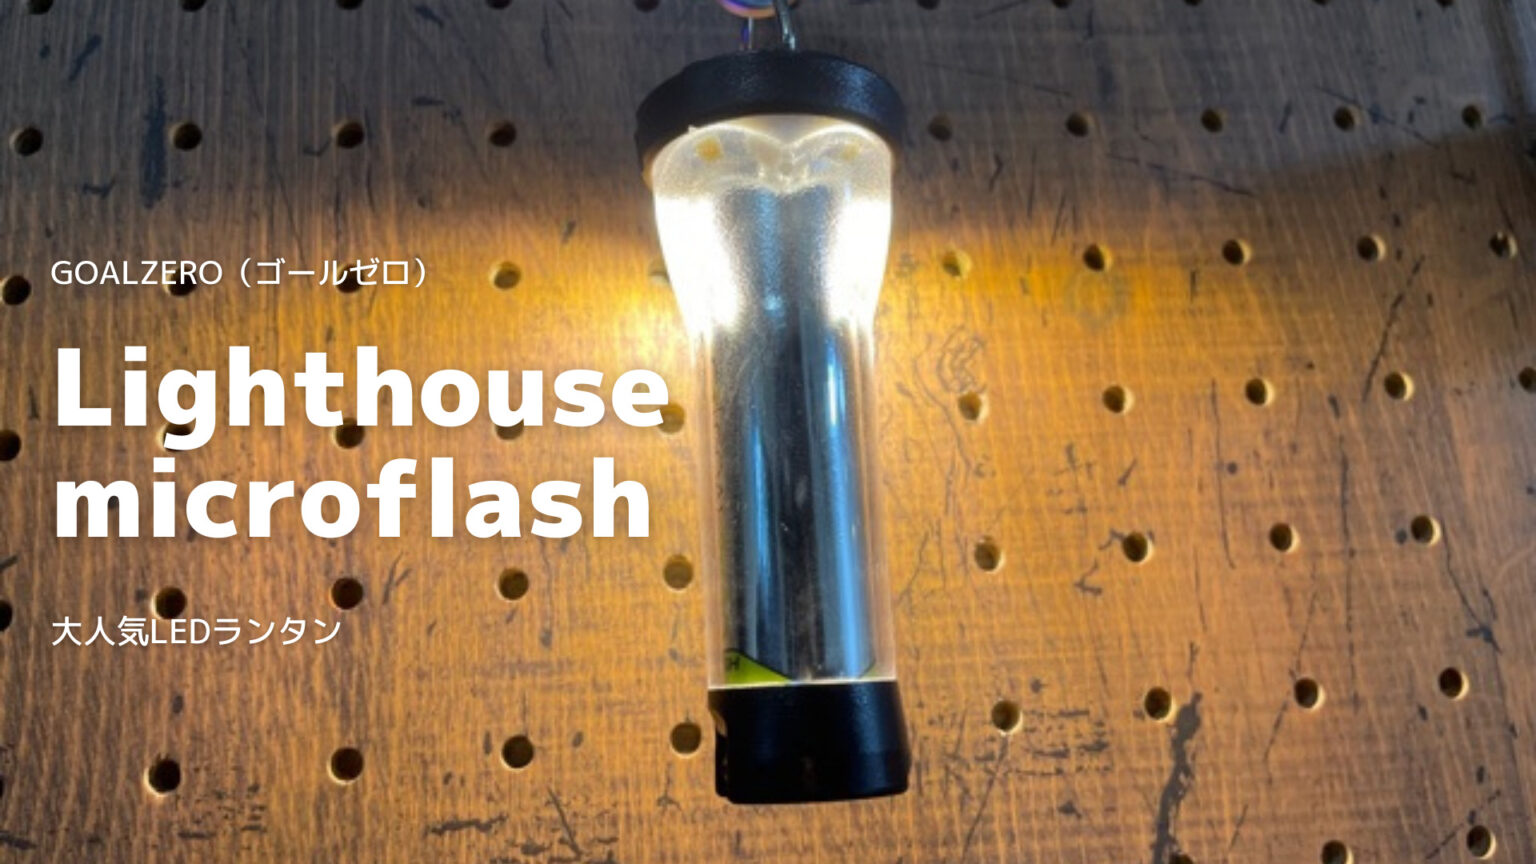 【スペックや定価、入荷情報など】GOALZERO（ゴールゼロ）Lighthouse micro flash【大人気LEDランタン】 | フィールド設計